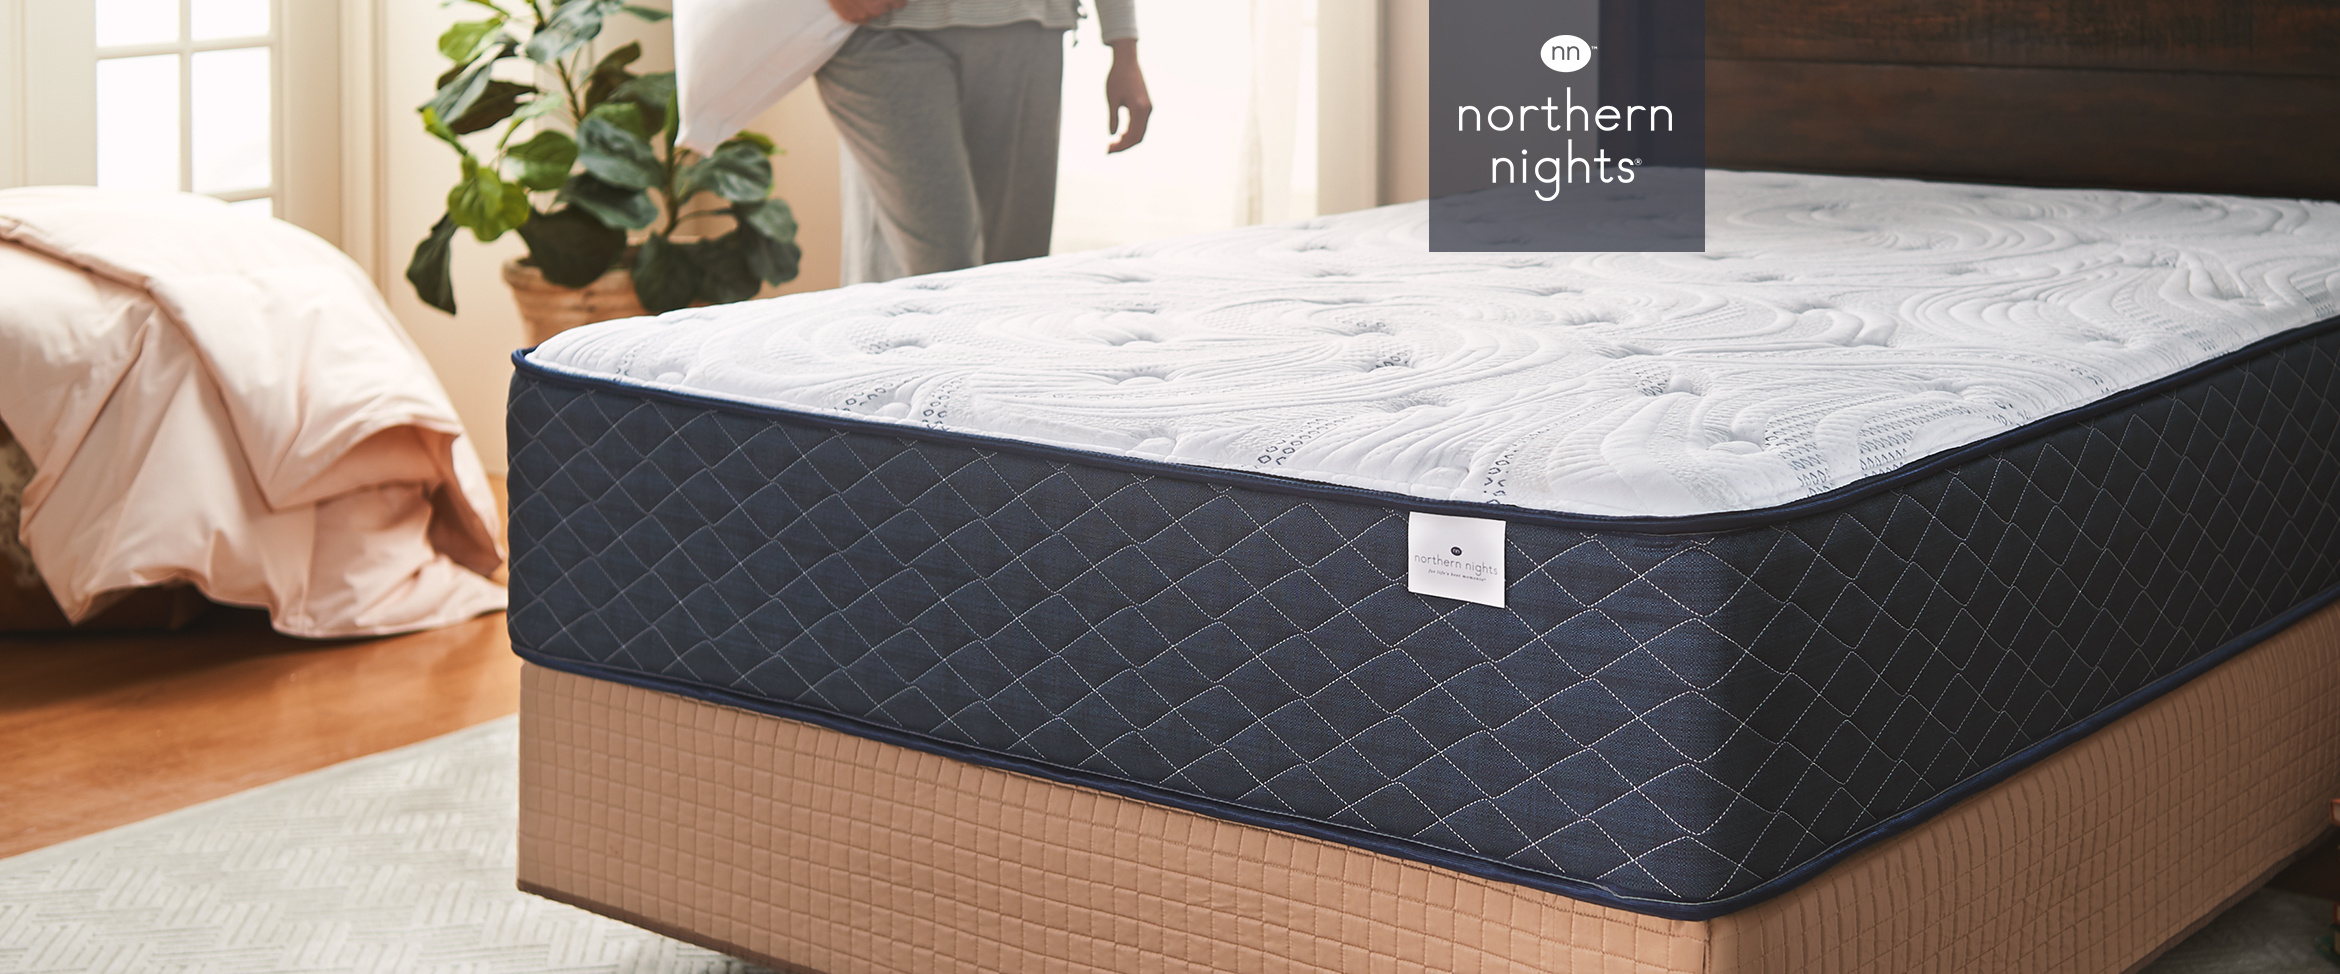 northern nights queen 11 dream hybrid mattress